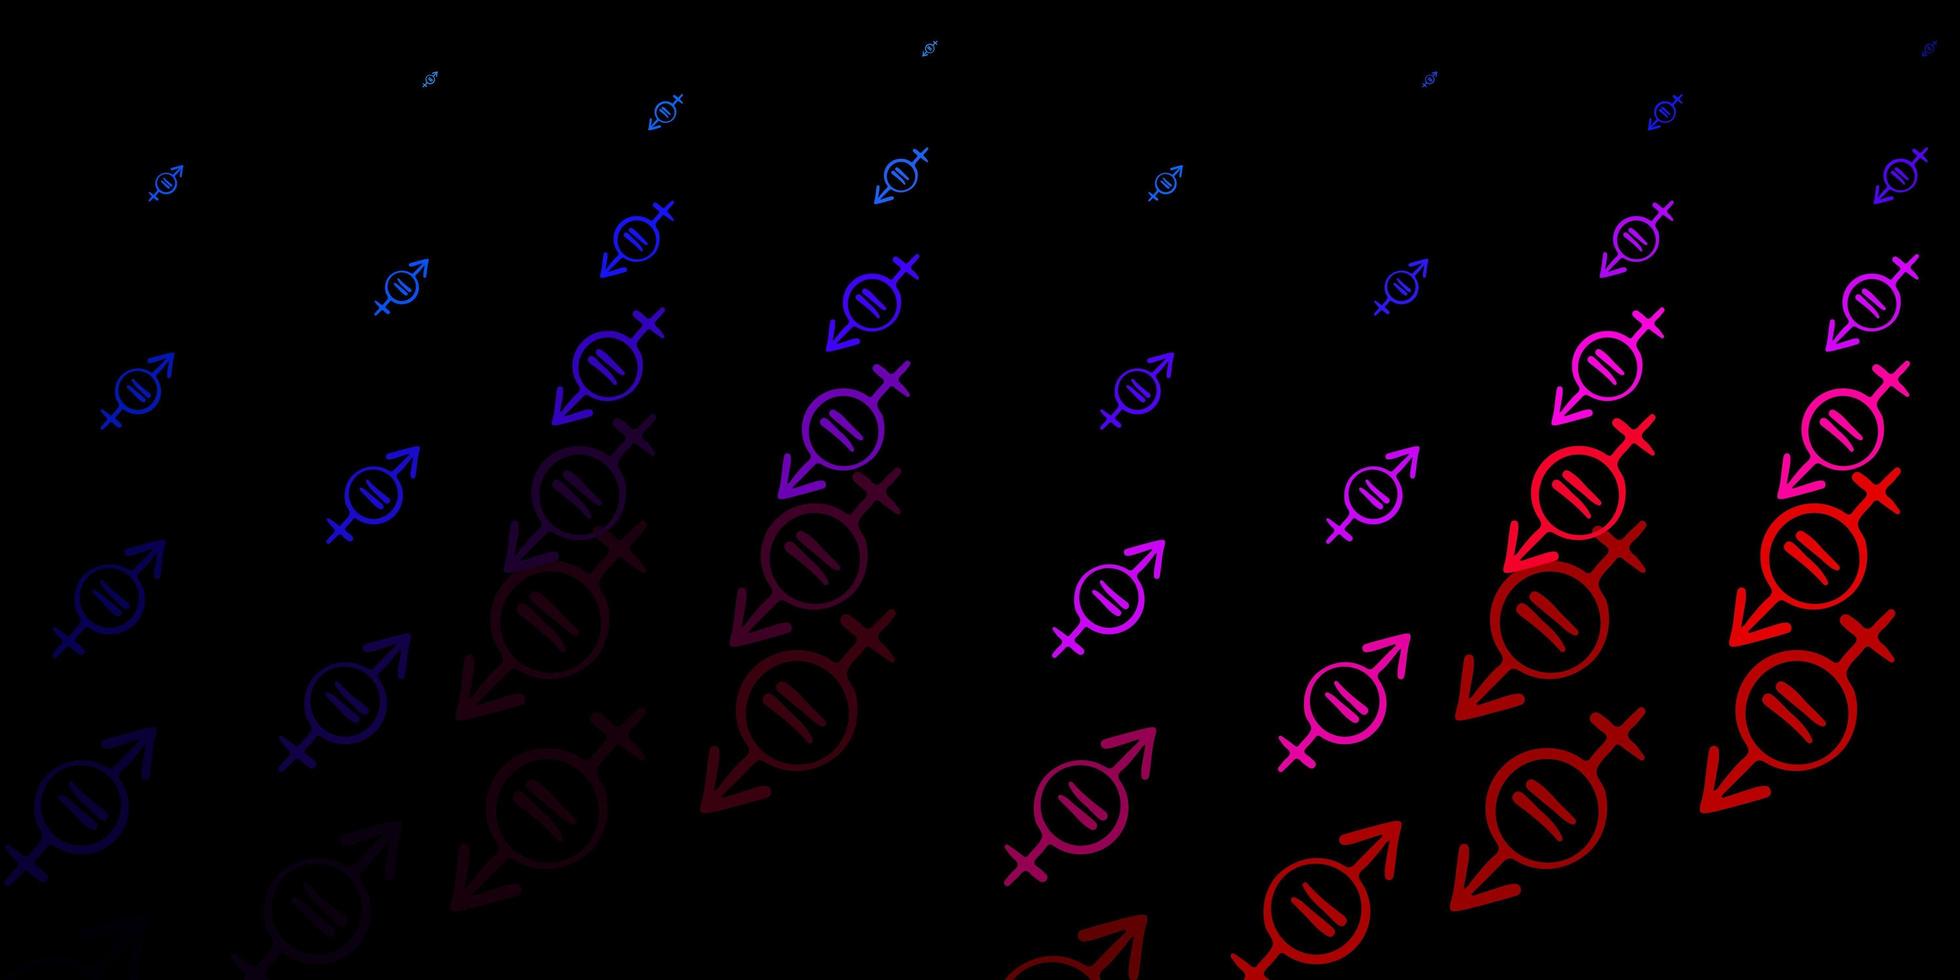 patrón de vector azul oscuro, rojo con elementos de feminismo.